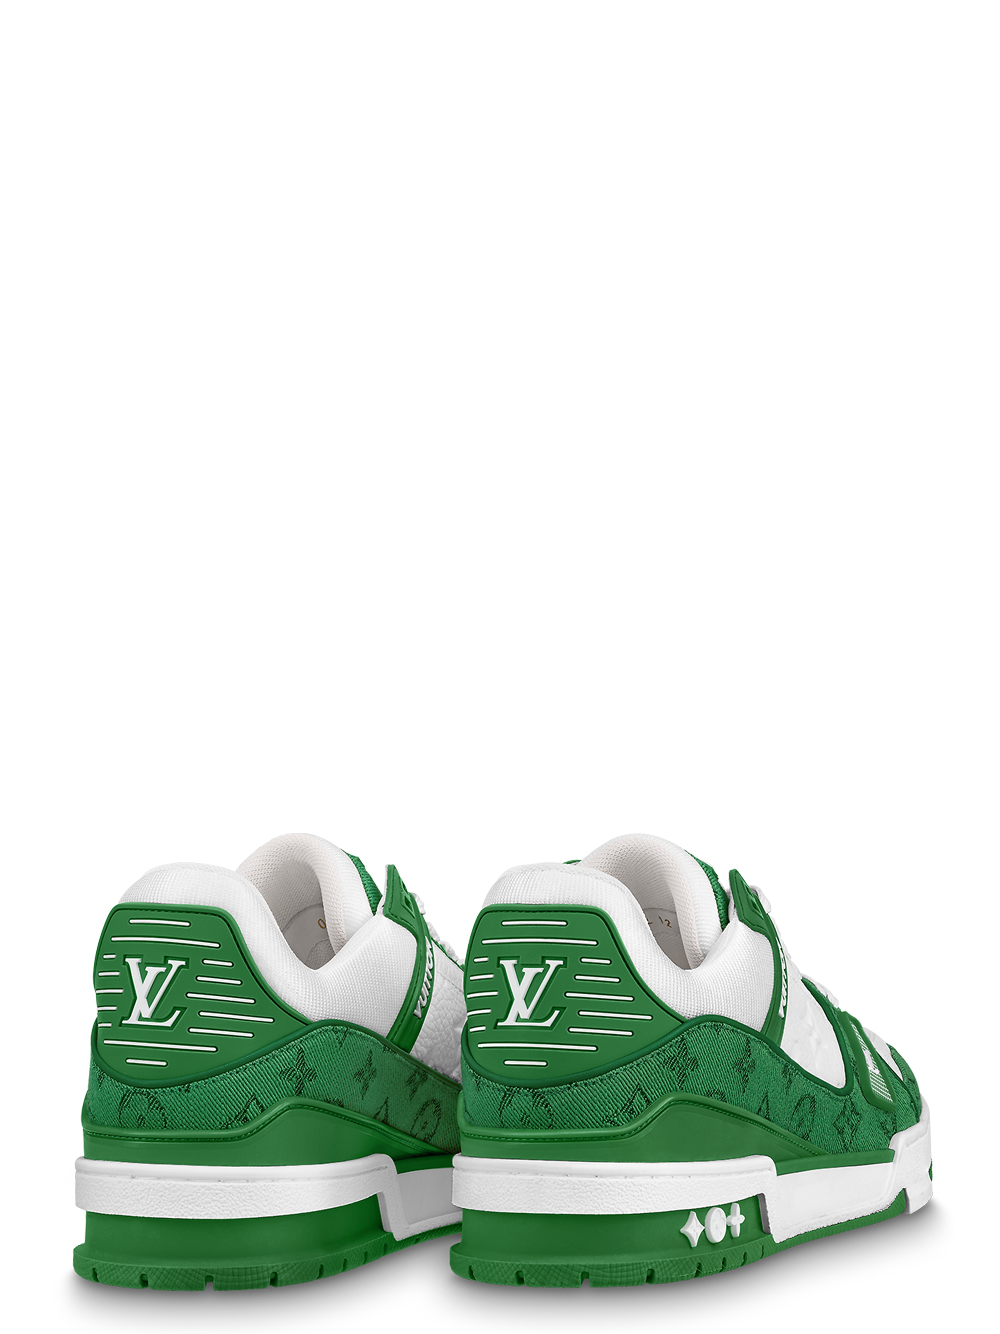 LV Trainer 2 Sneaker Boot  Men  Shoes  LOUIS VUITTON 